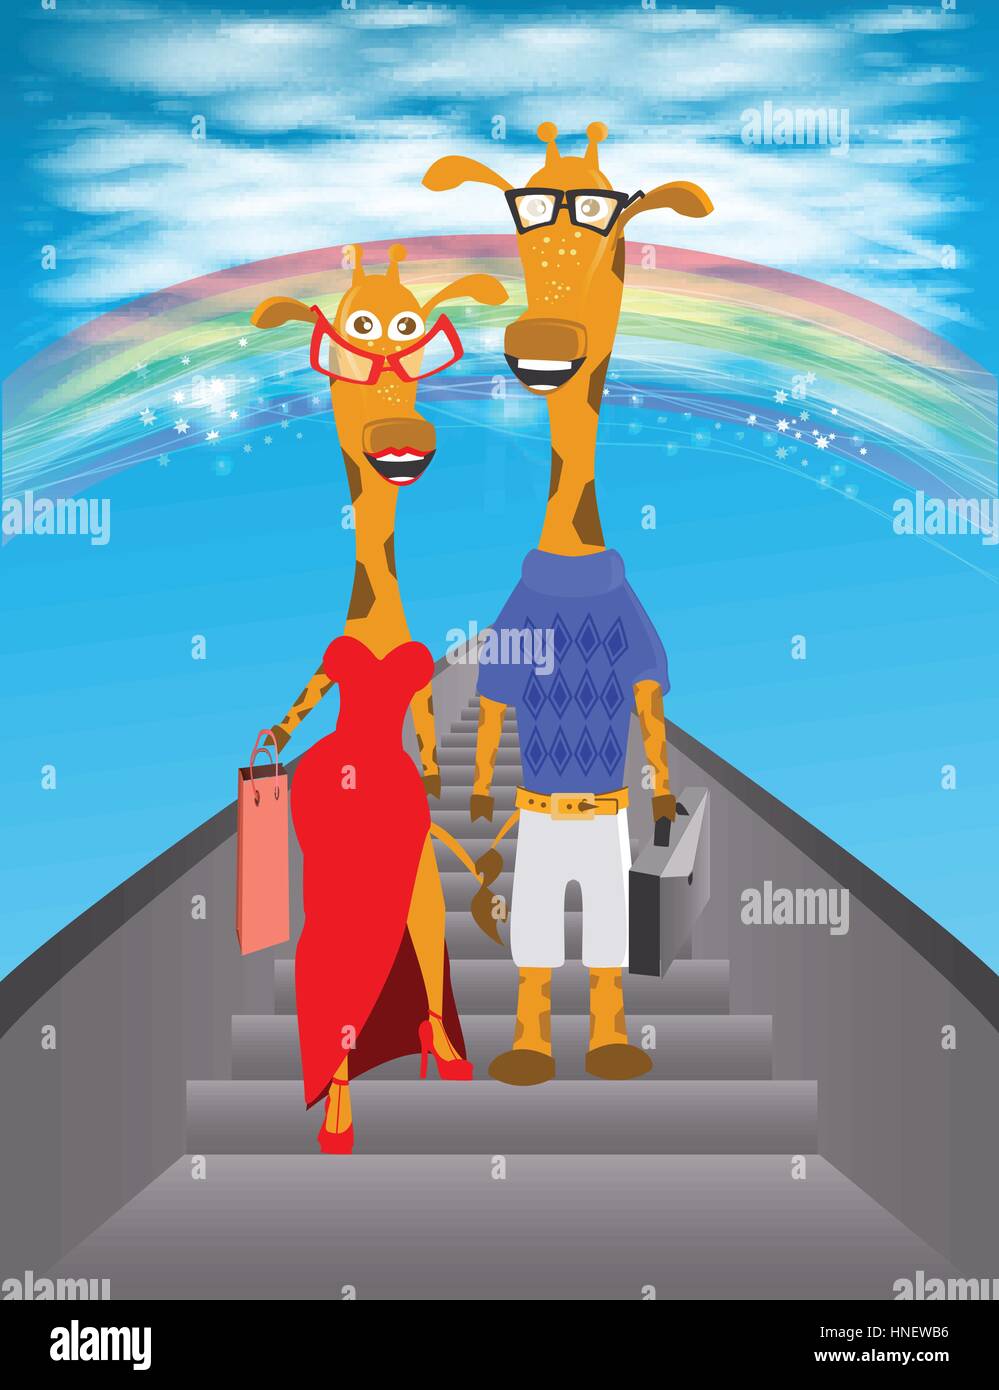 Giraffe illustrazione. Scendere dalla scala al cielo con un arcobaleno e nuvole. baby picture. Cartoon. utilizzata per la stampa, sito web, design, decorazione, Illustrazione Vettoriale